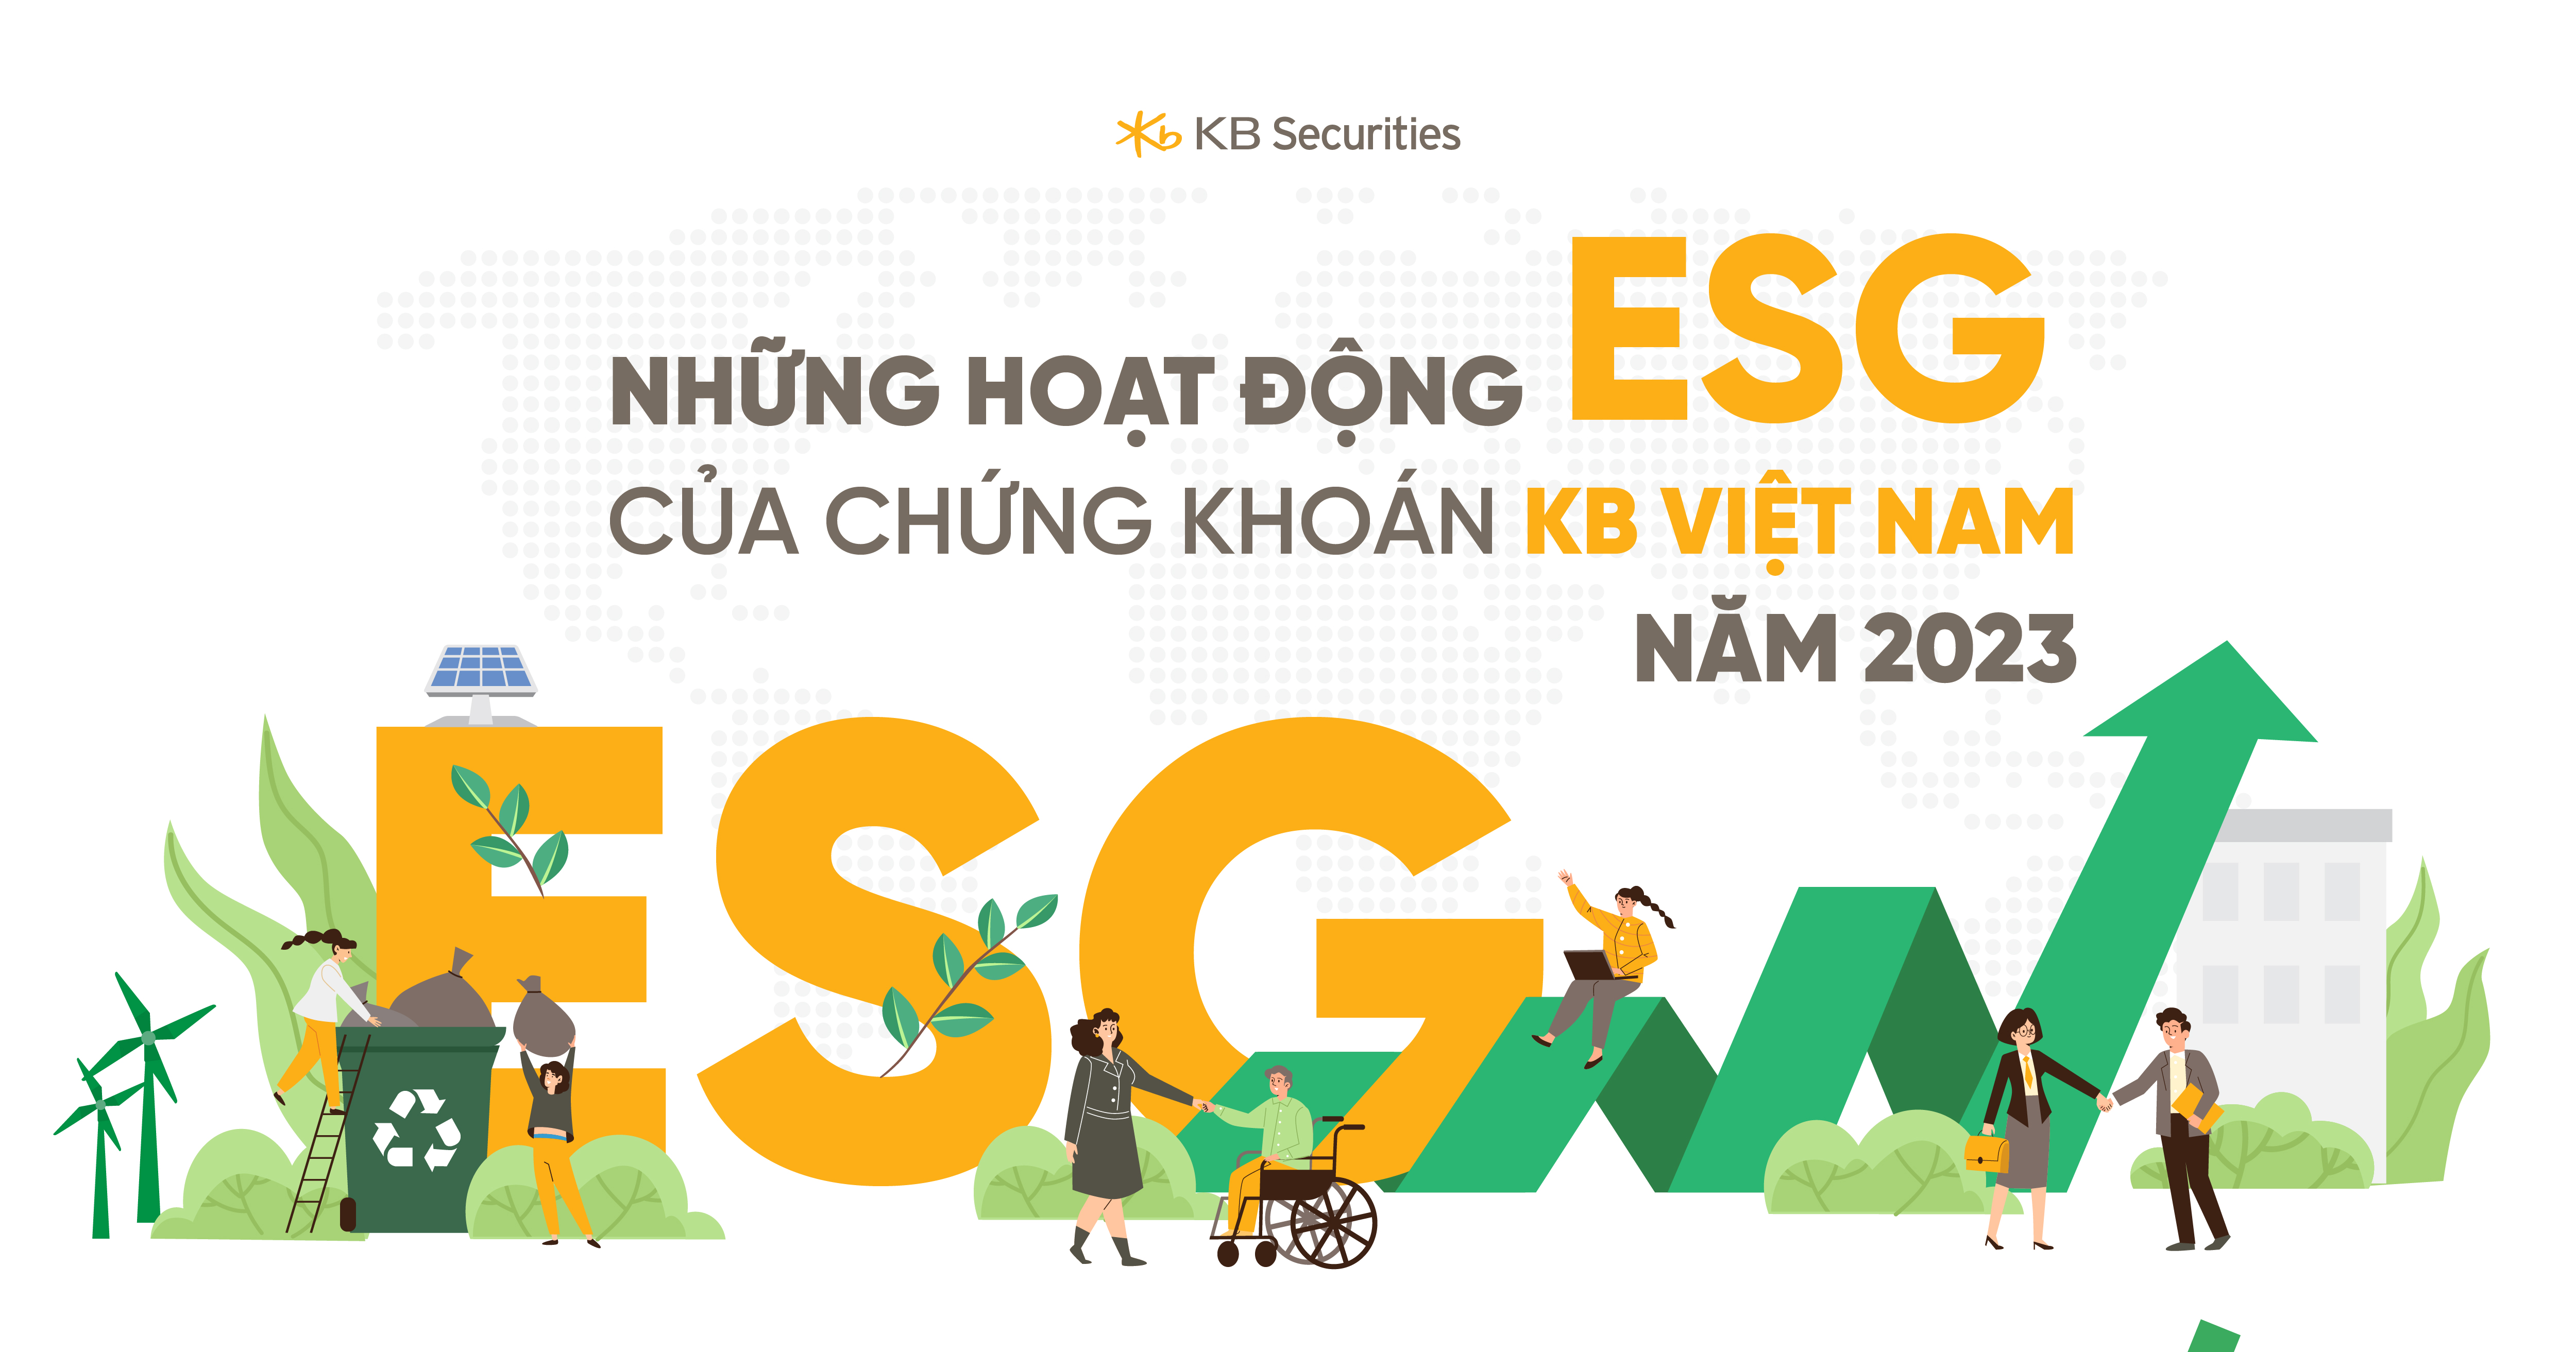 KB Securities Vietnams ESG initiatives in 2023